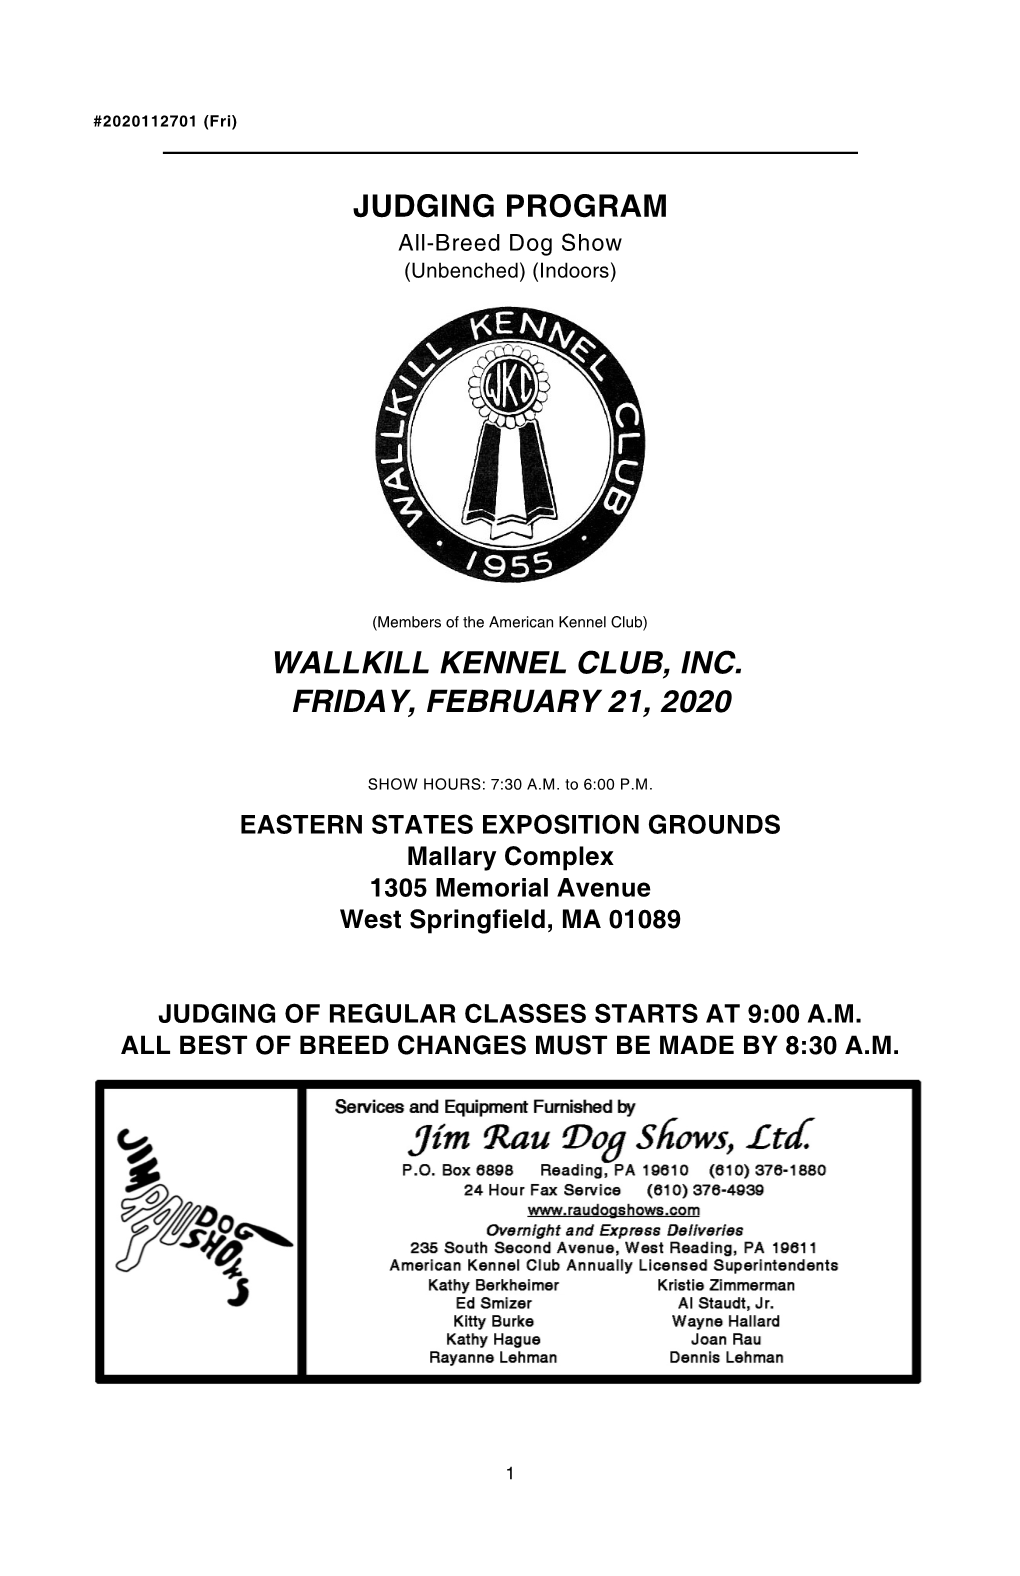 Judging Program Wallkill Kennel Club, Inc. Friday